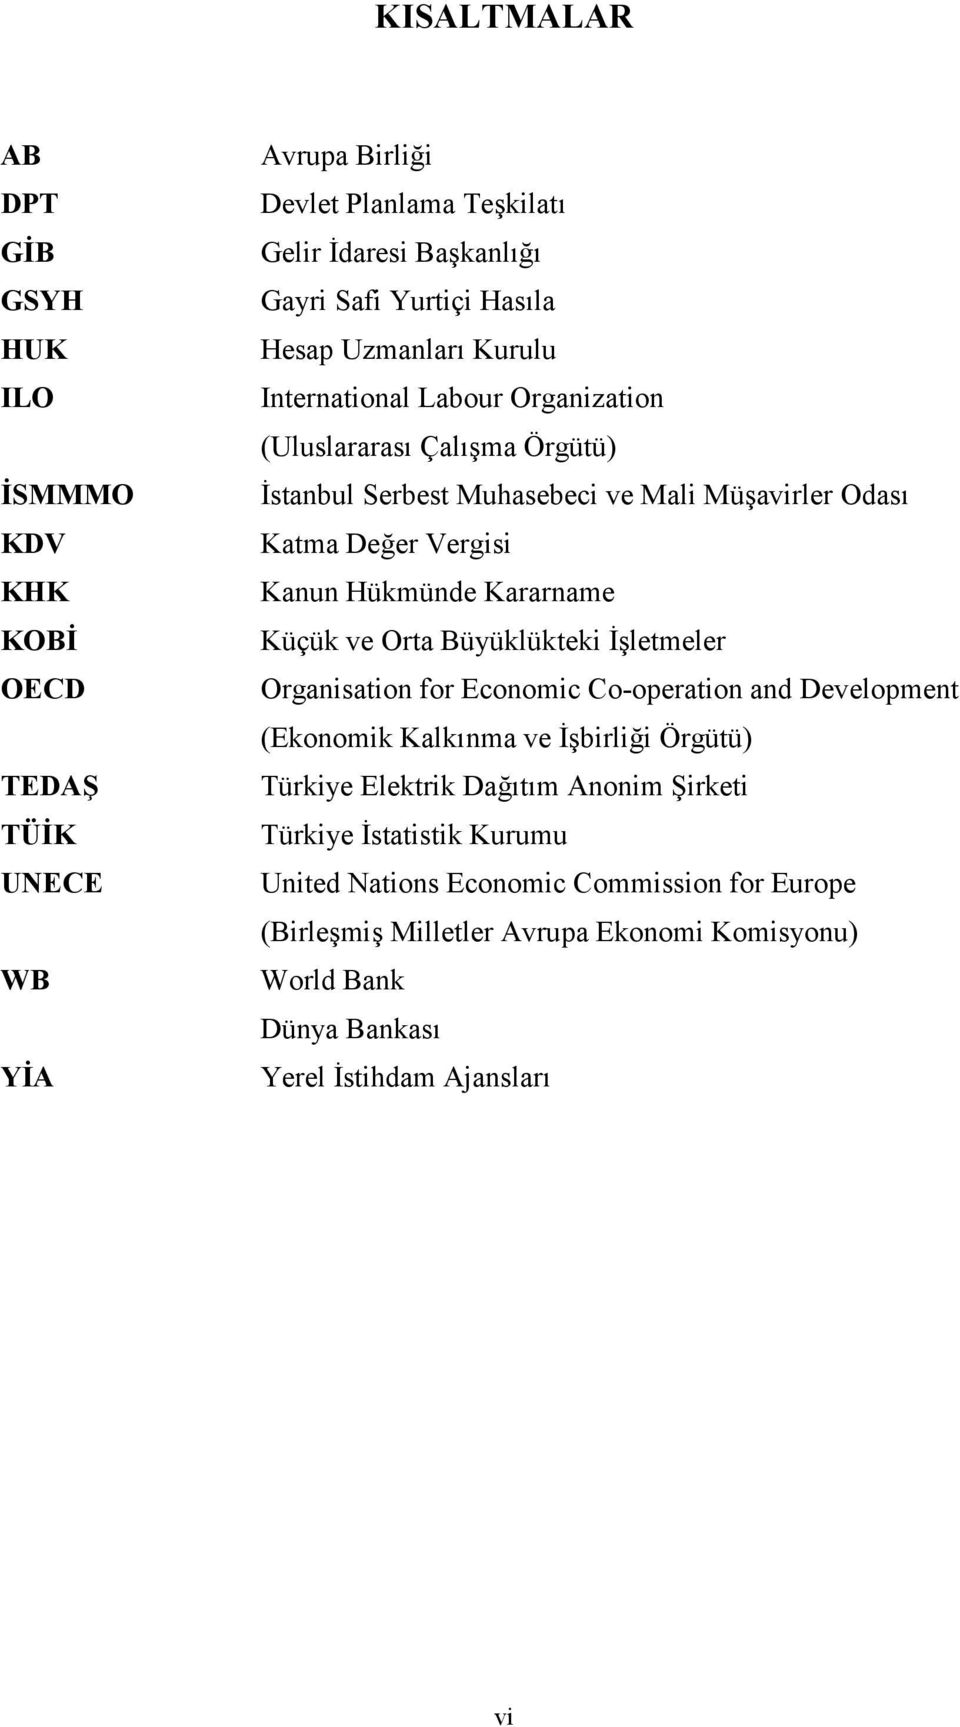 Kararname Küçük ve Orta Büyüklükteki İşletmeler Organisation for Economic Co-operation and Development (Ekonomik Kalkınma ve İşbirliği Örgütü) Türkiye Elektrik Dağıtım Anonim